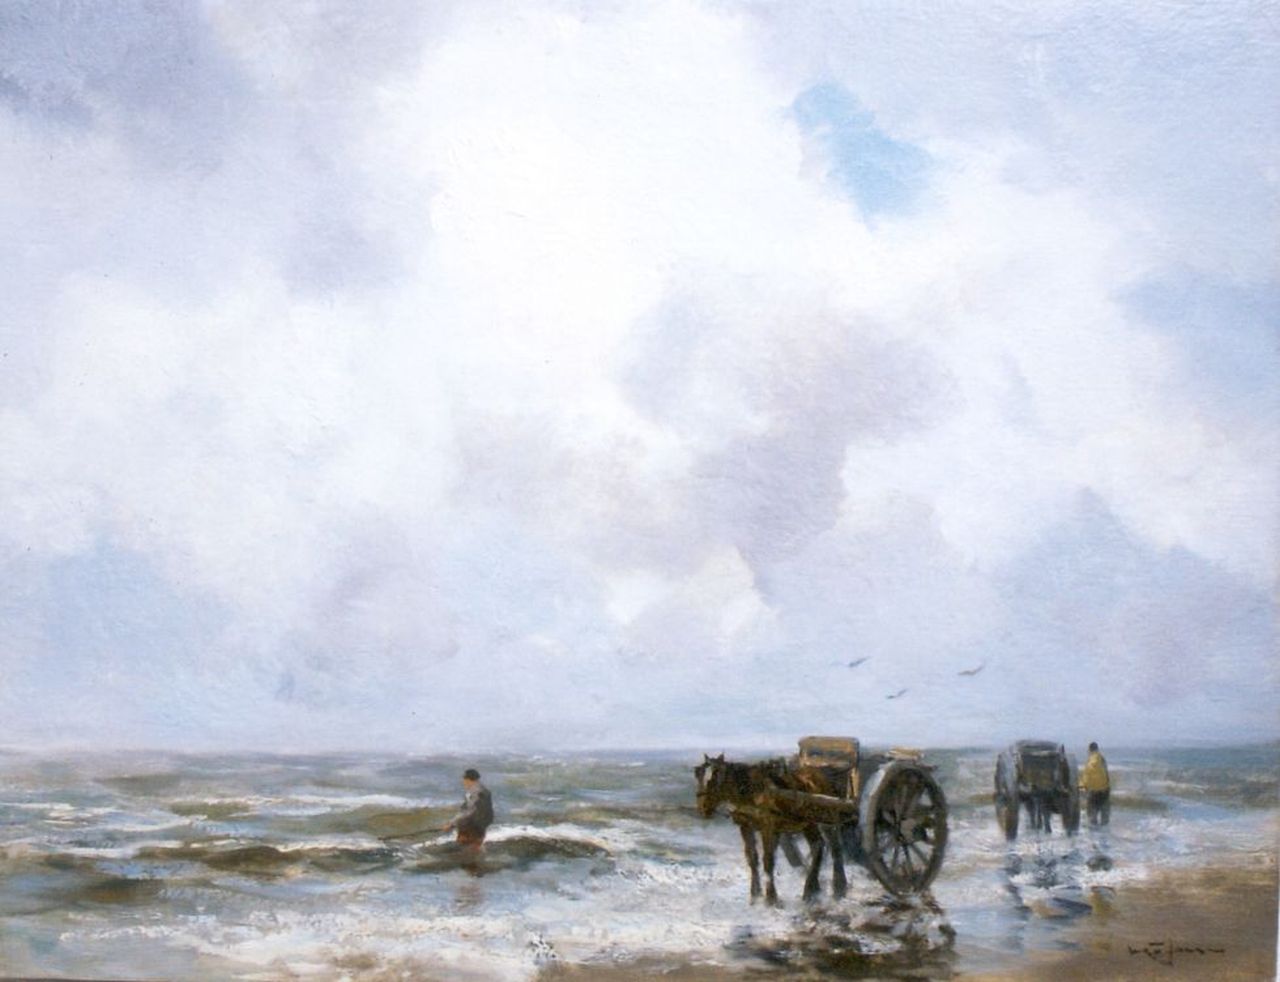 Jansen W.G.F.  | 'Willem' George Frederik Jansen, A shell-gatherer in the surf, Öl auf Leinwand 50,1 x 65,5 cm, signed l.r.